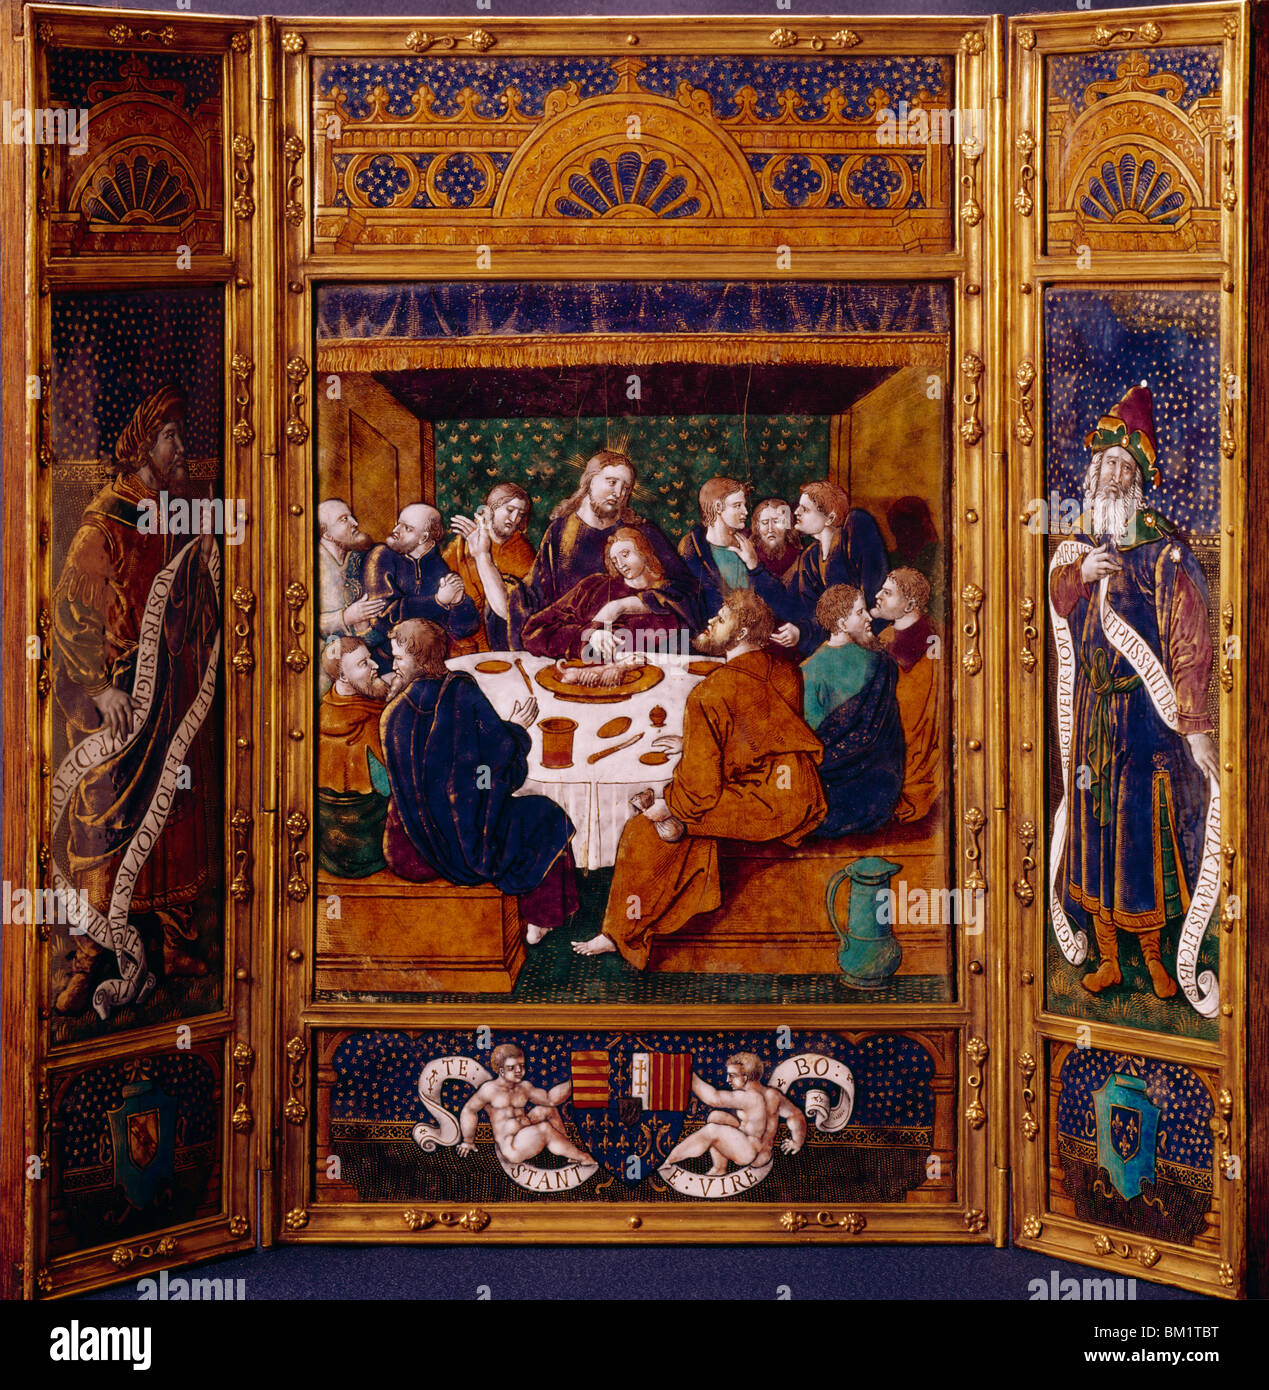 Trittico dell'Ultima Cena da Jean Penicaud io, smalto, XVI secolo, Francia, Nimes, Musee des Artes Decoratifs Foto Stock